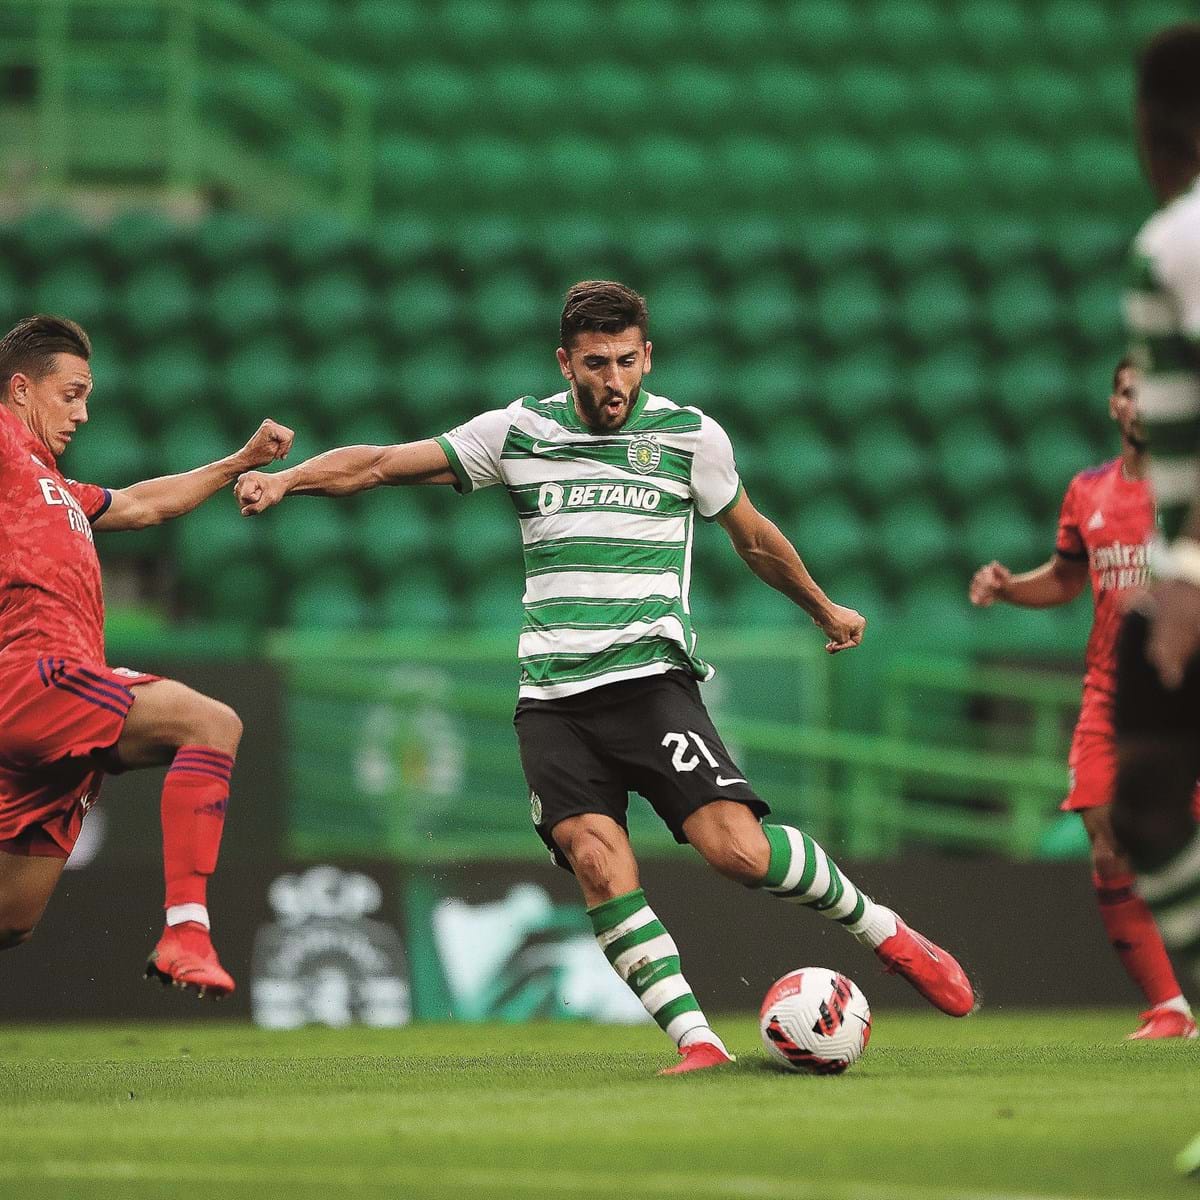 PJ investiga jogos do Sporting frente a Vitória de Guimarães e